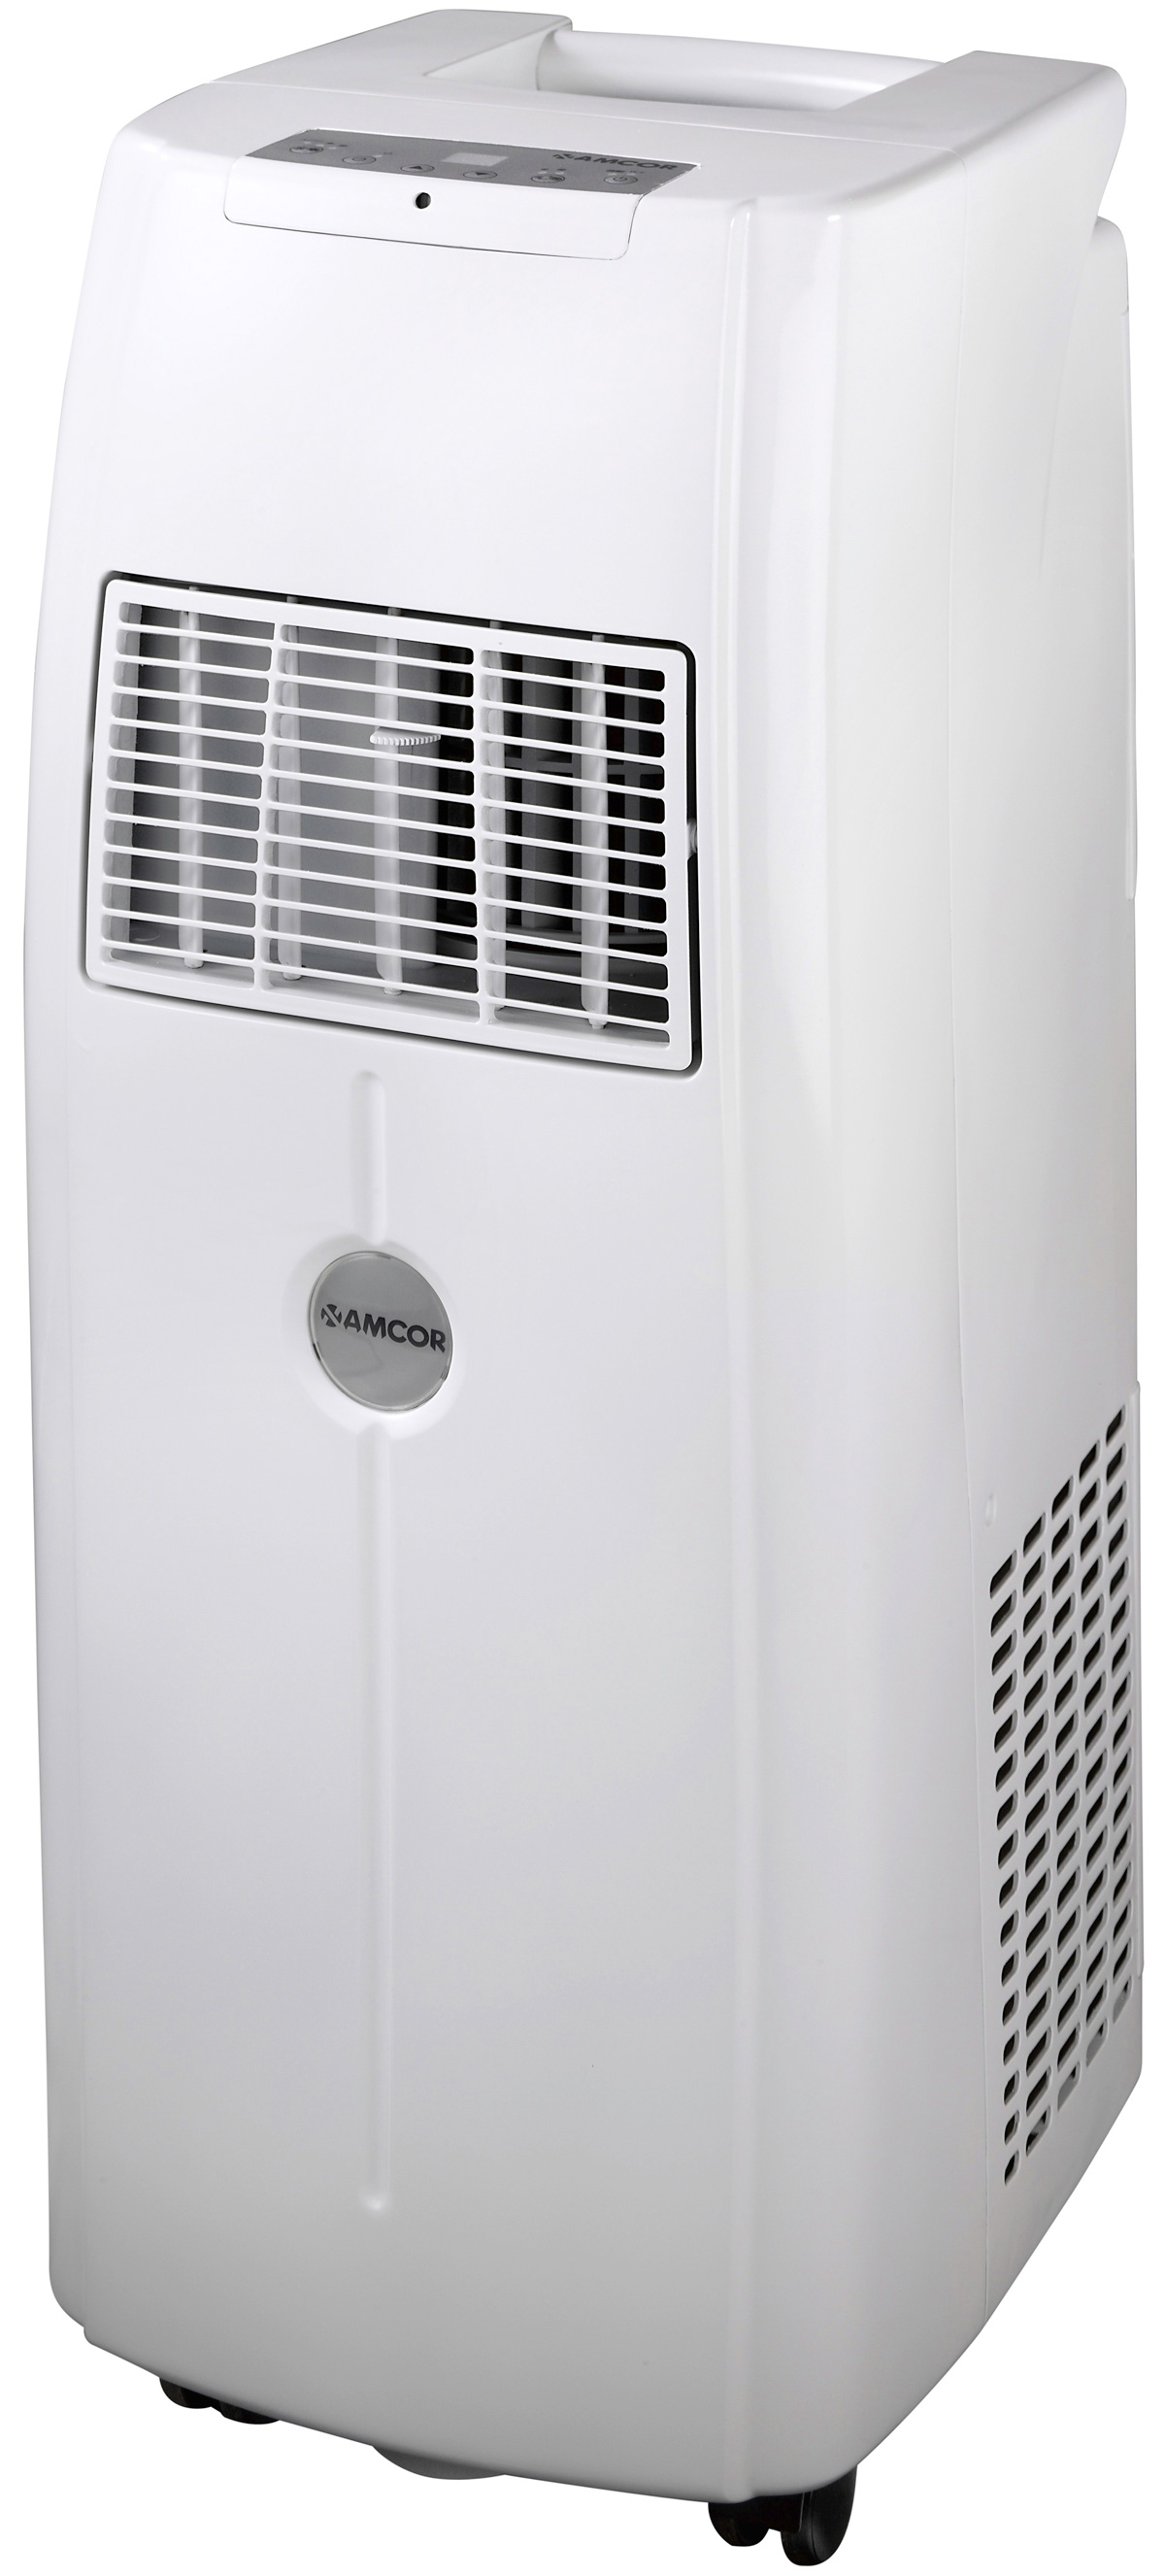 NanomaxA12000E 12000 BTU Portable Air Conditioner : Amcor ...